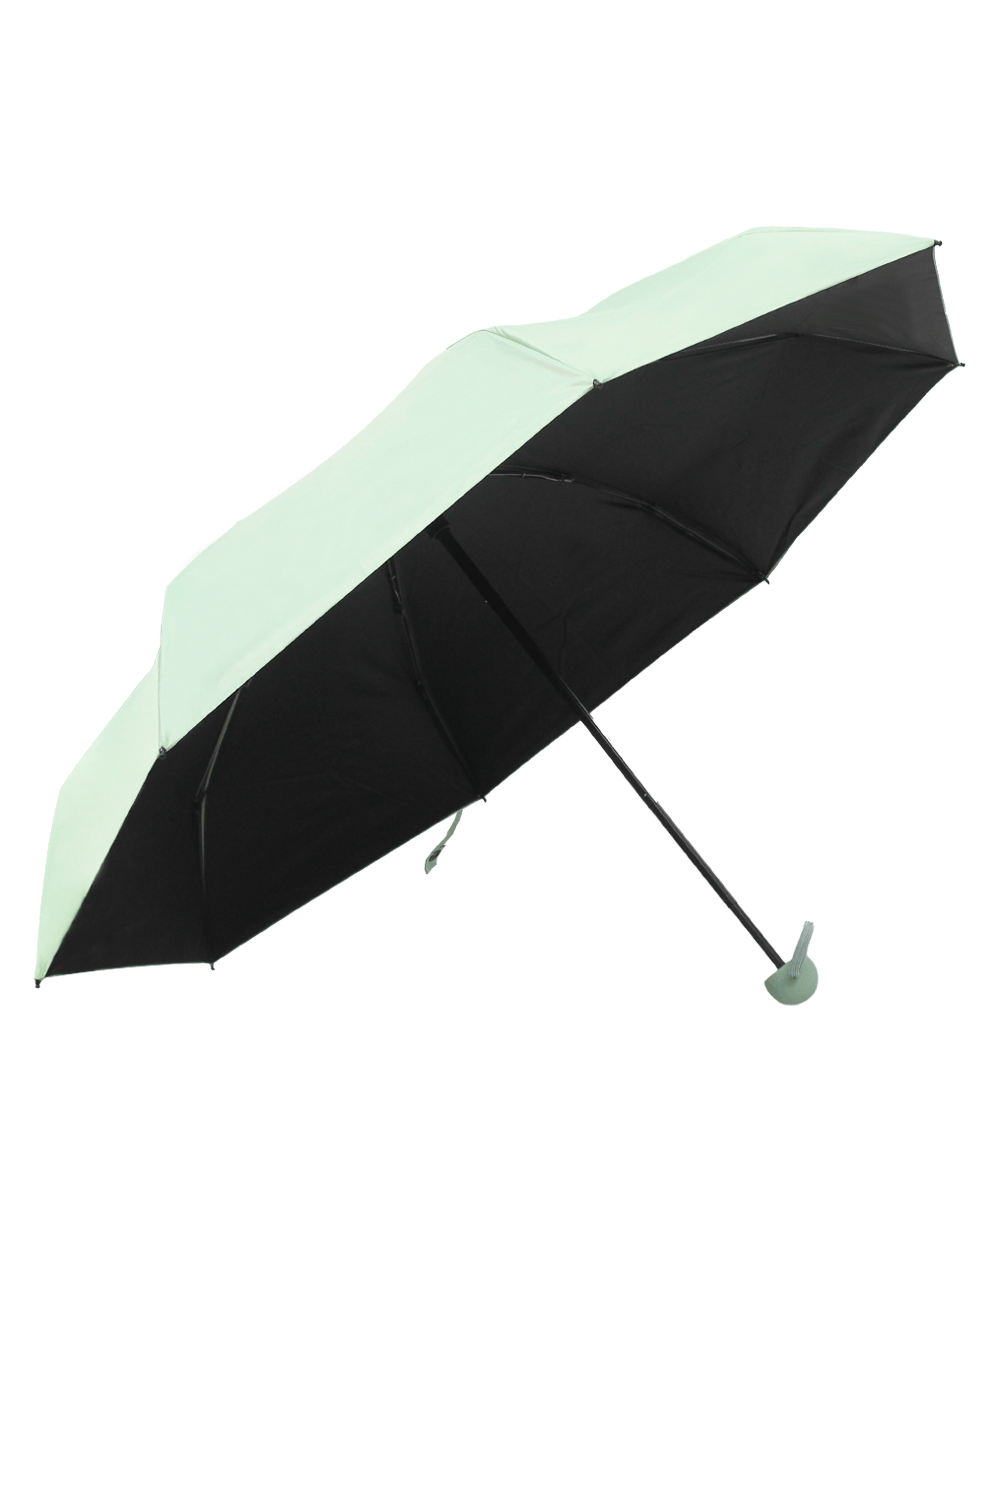 Tiffany Umbrella Mint Umbrella